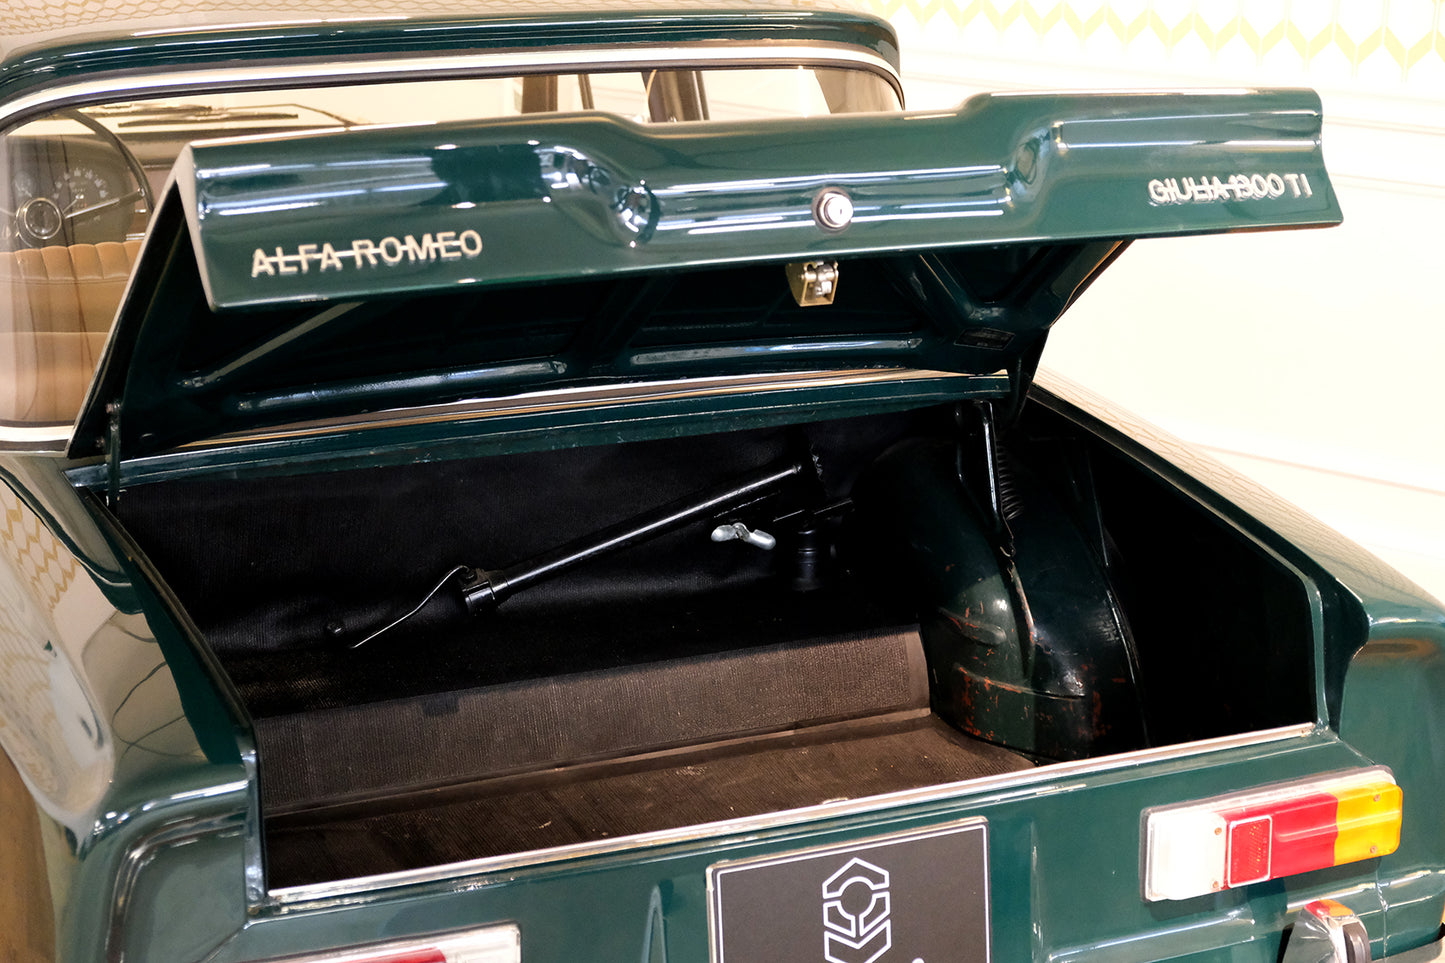 ALFA ROMEO Giulia 1300 TI - 1968